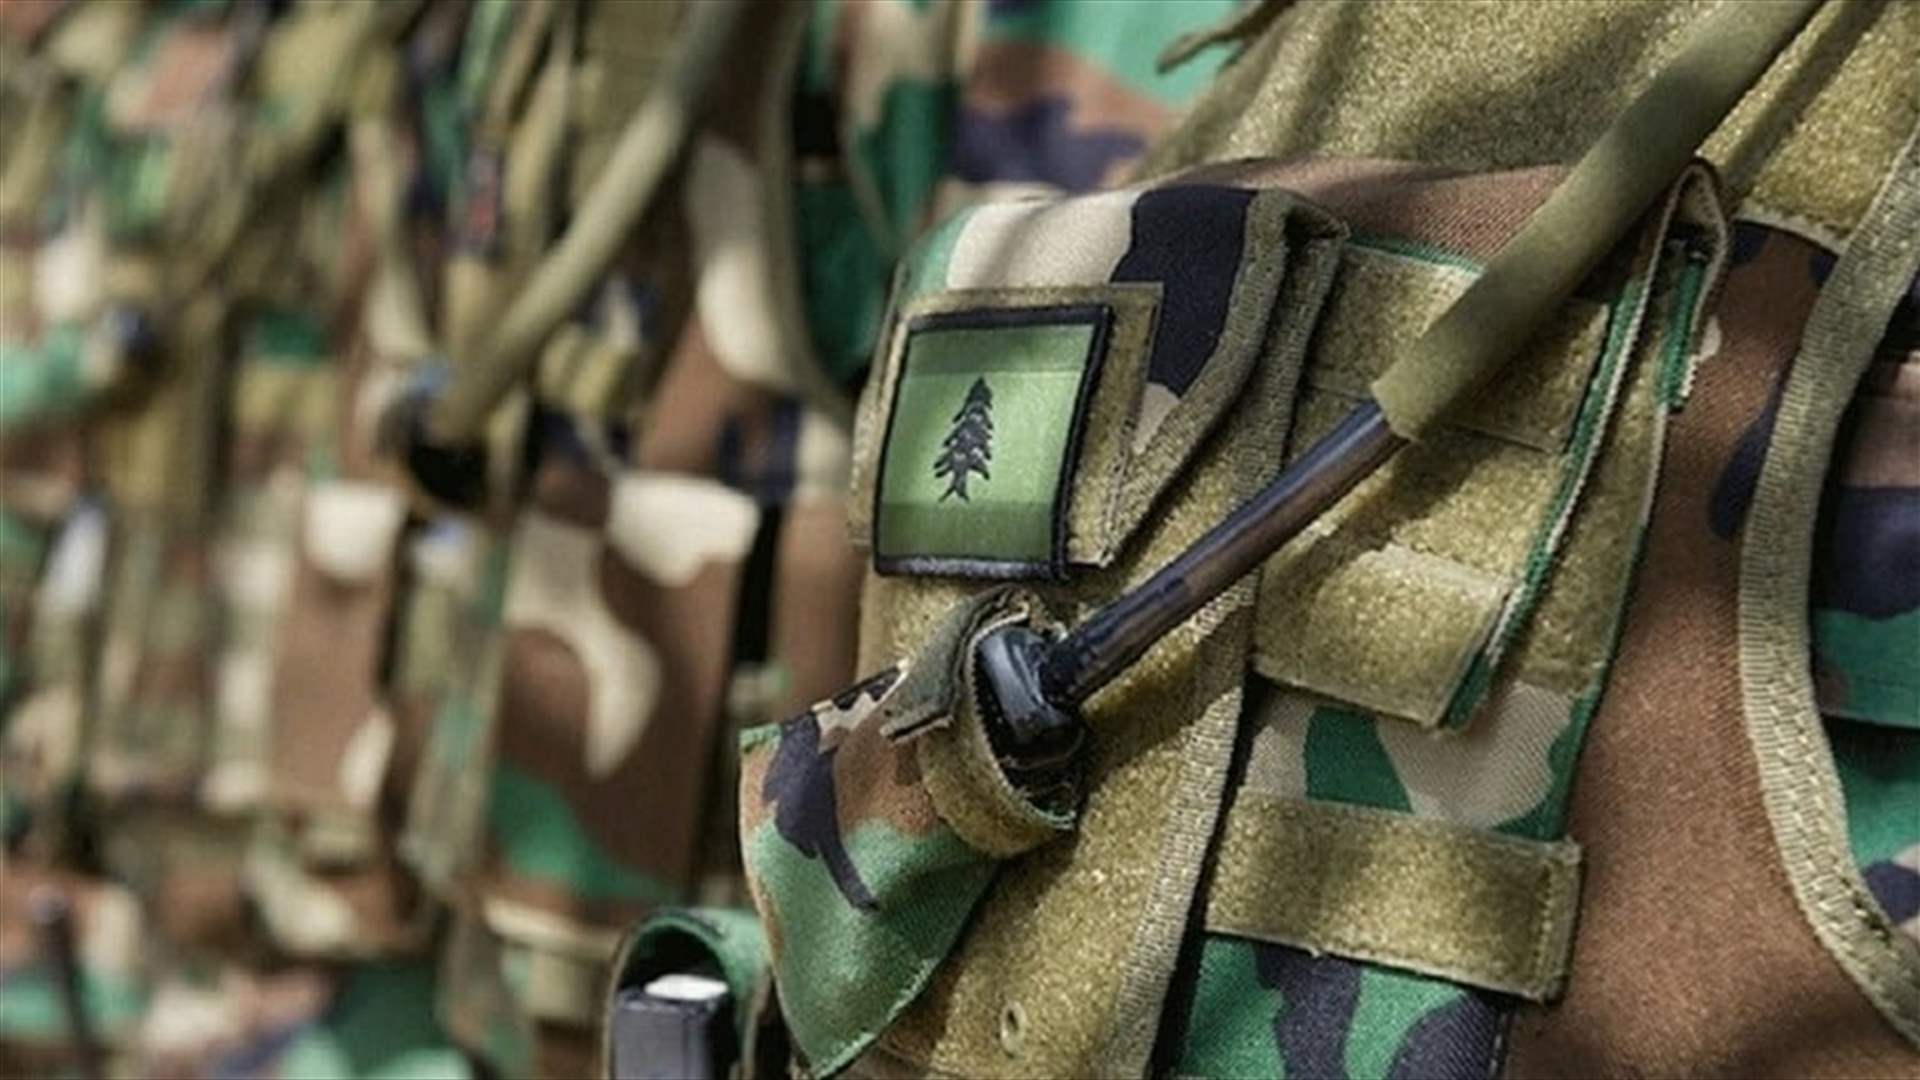 الجيش: توقيف أحد المطلوبين خلال انتقاله من البقاع الى بيروت لنقل كمية من المخدرات (صور)